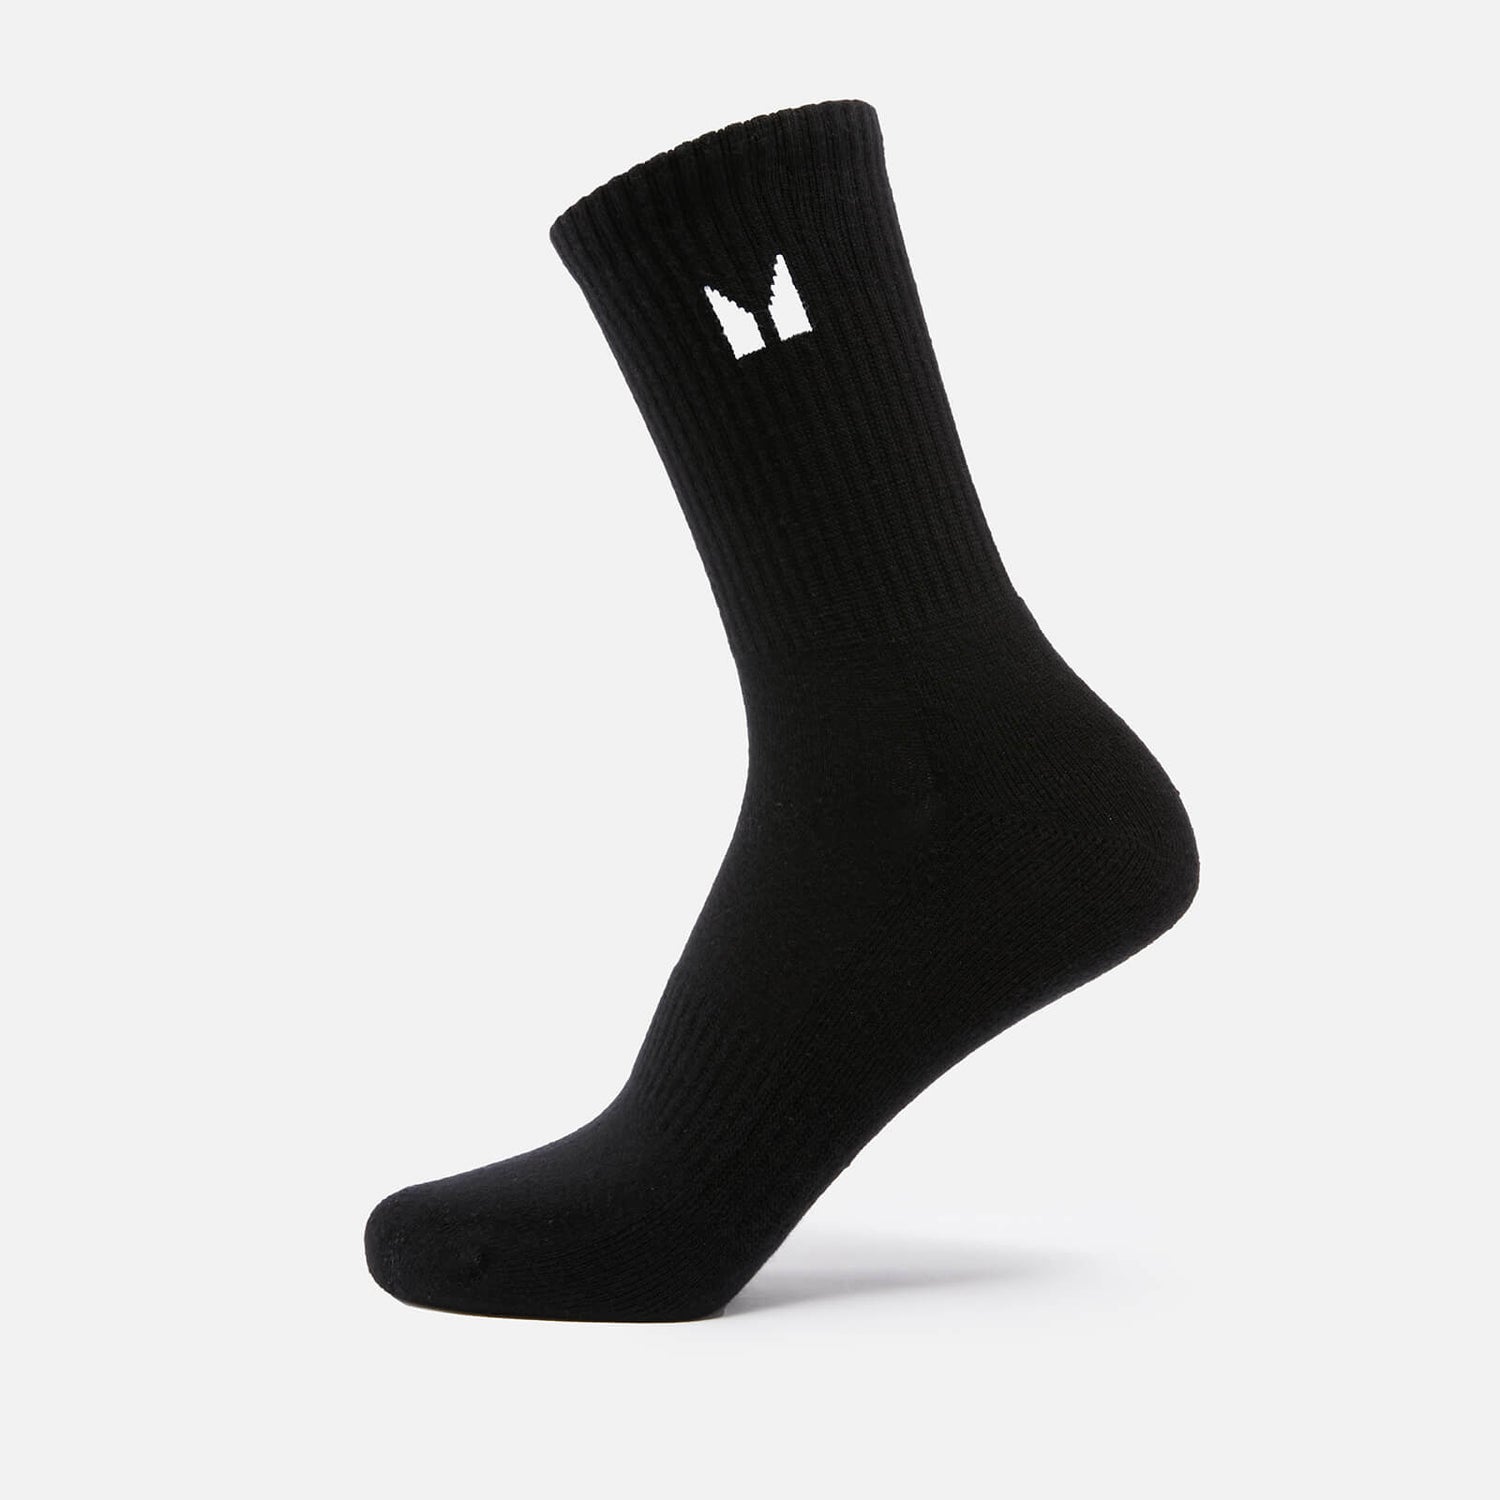 MP Unisex Agility lange sokken - Zwart - UK 2-5